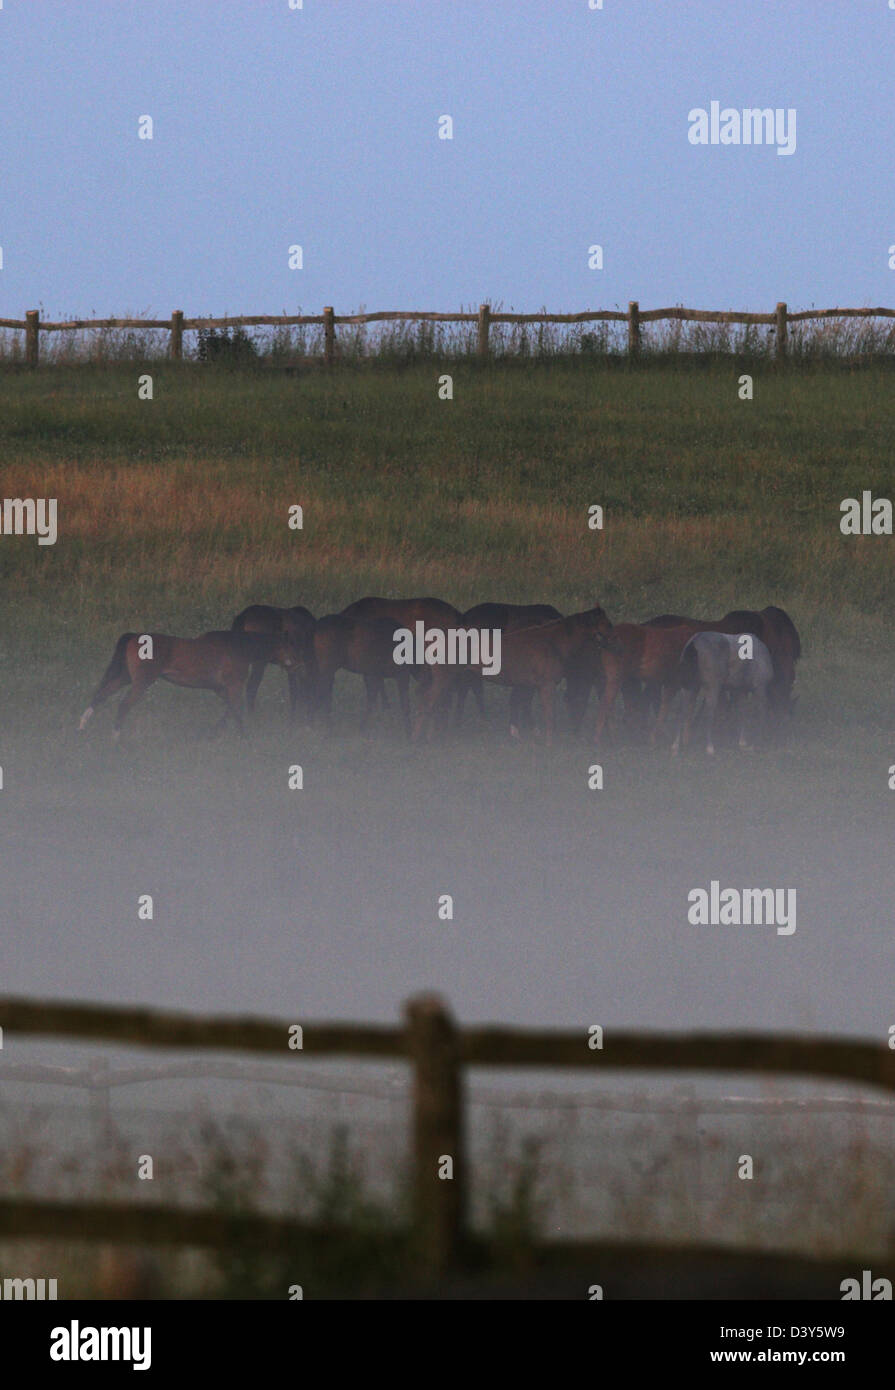 Görlsdorf, Allemagne, les chevaux dans le brouillard sur l'Alpage Banque D'Images